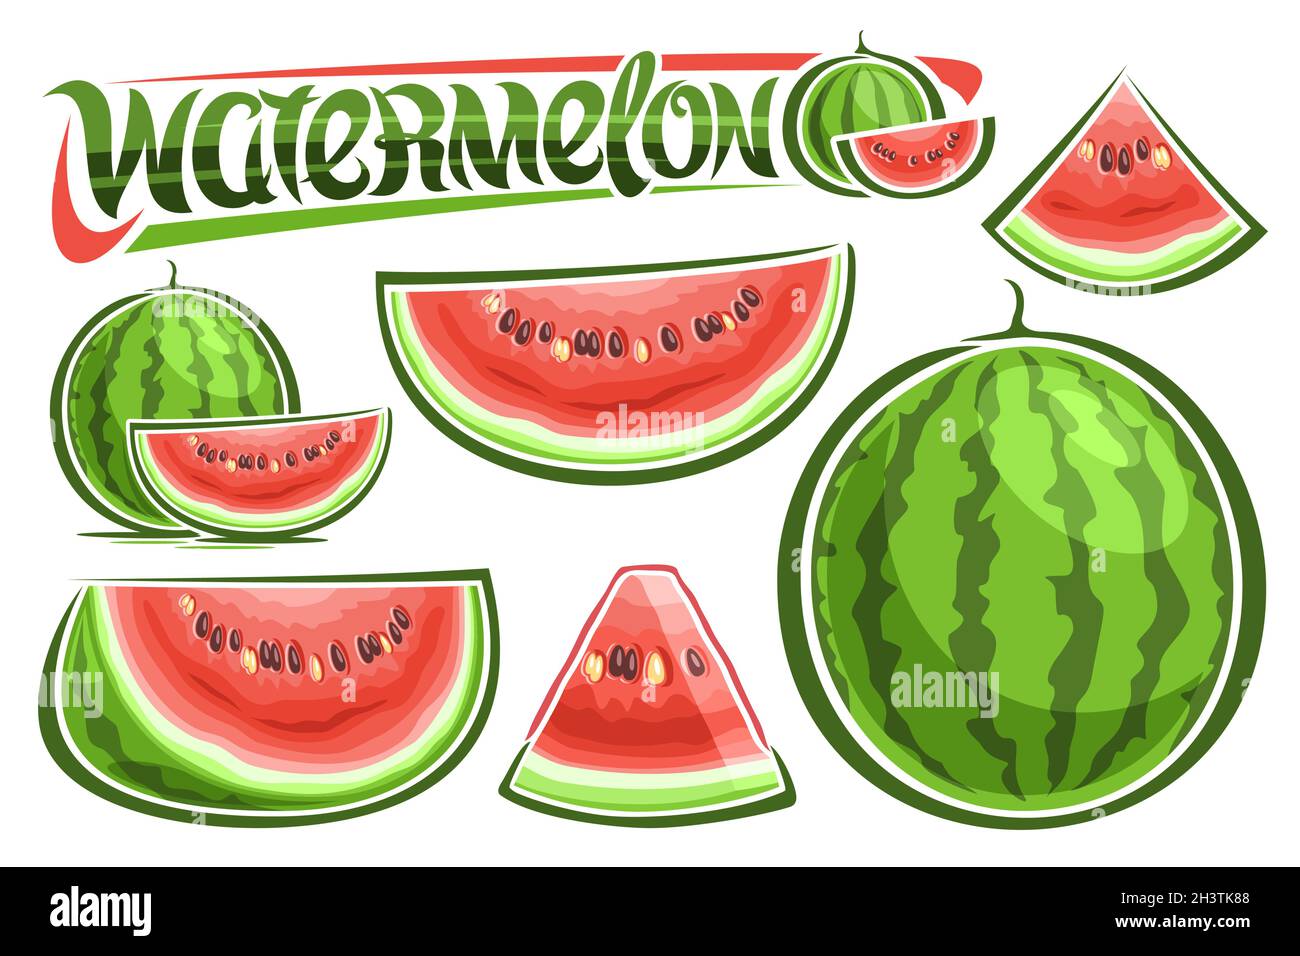 Vektor-Wassermelonen-Set, Lot Sammlung von ausgeschnittenen Illustrationen Frucht Stillleben Komposition, Cartoon-Design geschnitten natürlichen Wassermelonen, einzigartige Bürste Stock Vektor